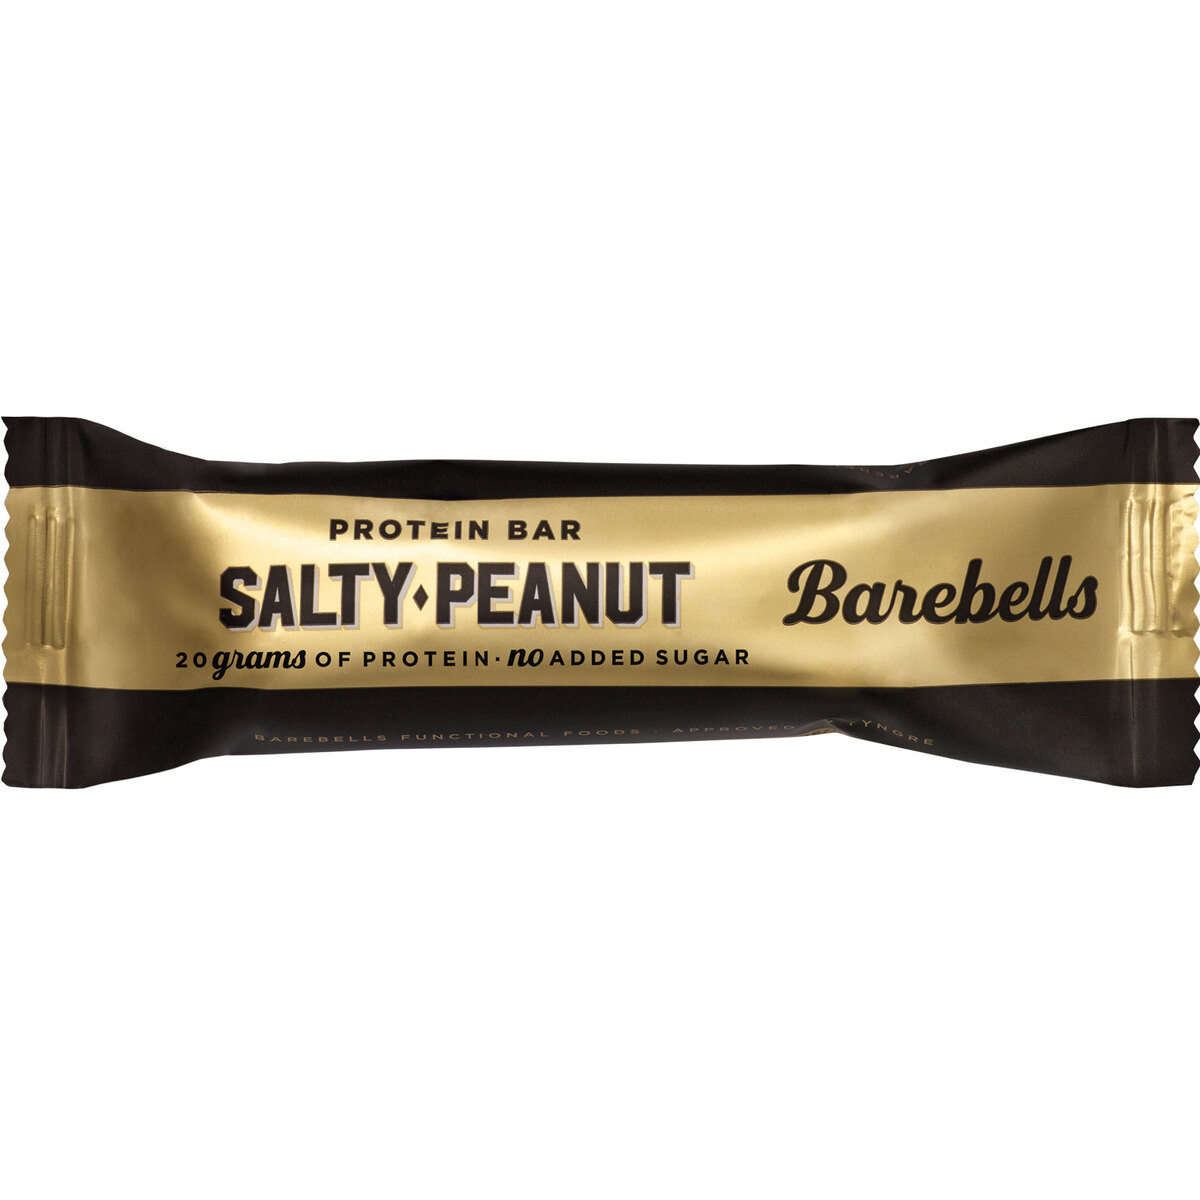 Buy Barebells Salty Peanuty Protein Bar 55 g Online at Best Price | Sports Nutrition | Lulu UAE in UAE